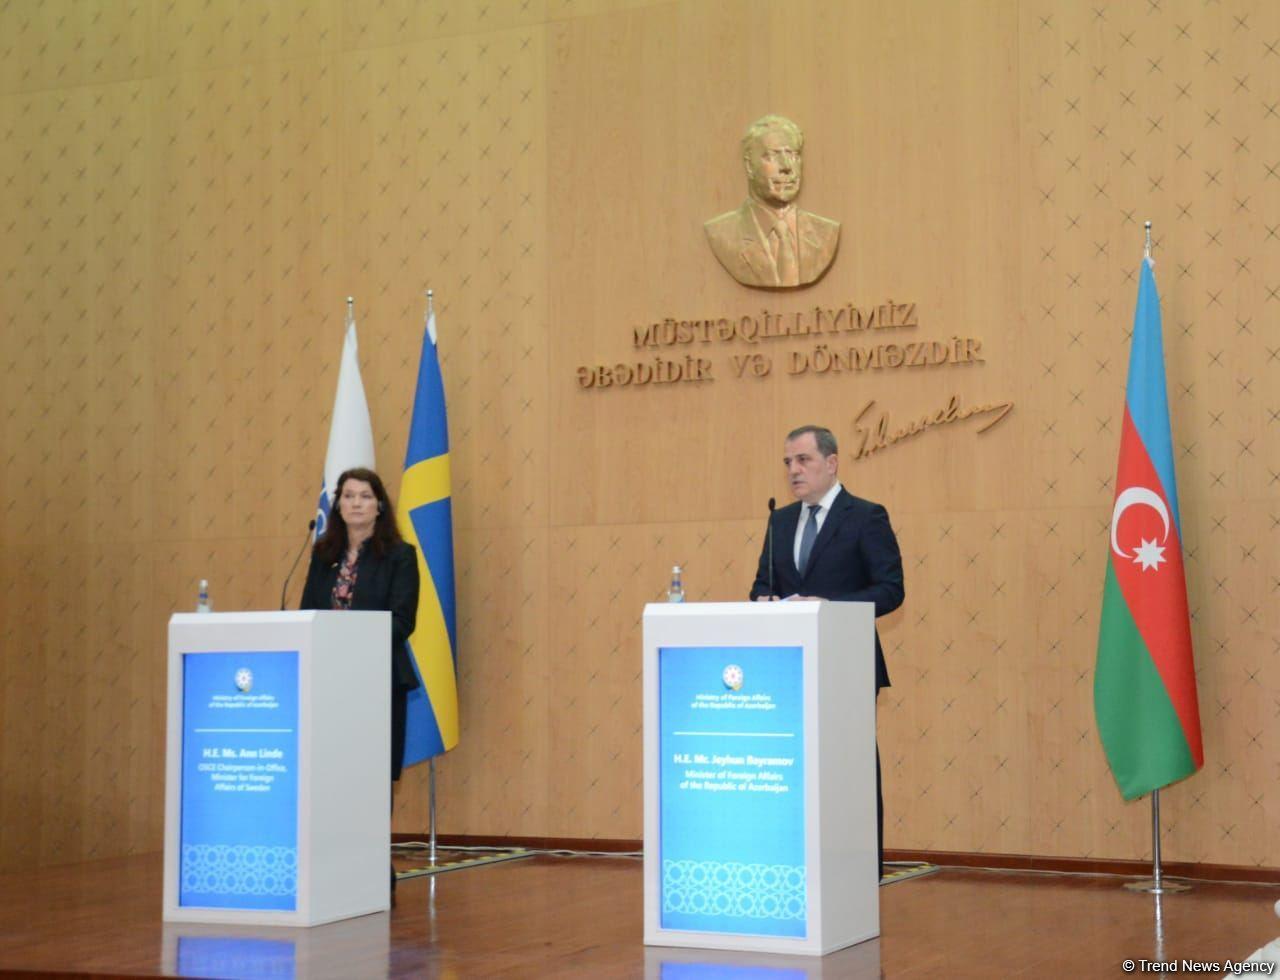 Effective co-op established between Azerbaijan and Sweden - FM